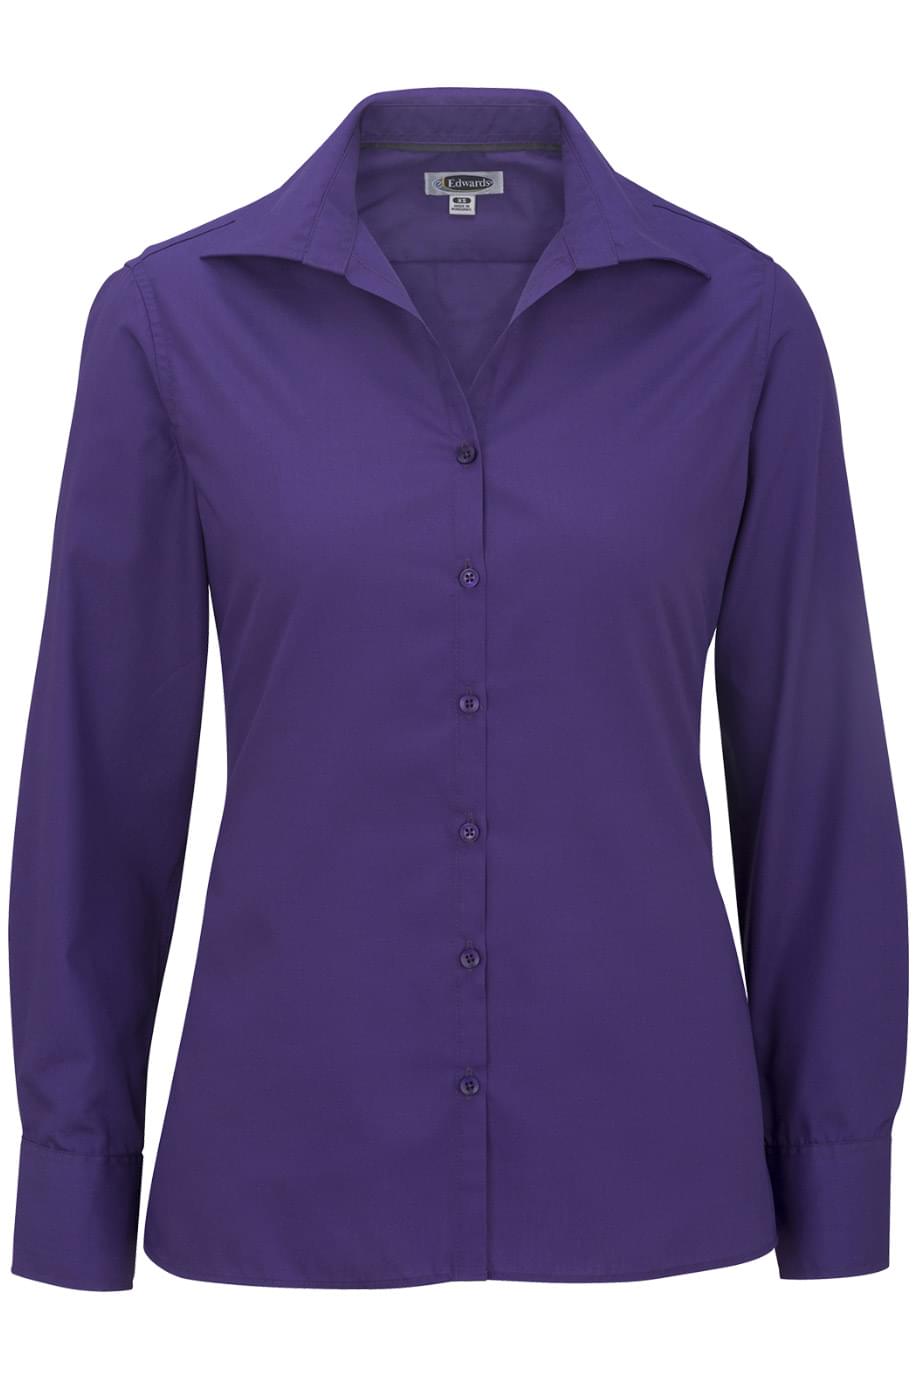 Edwards Garment 5295 - Women's Open Neck Poplin Long Sleeve Blouse